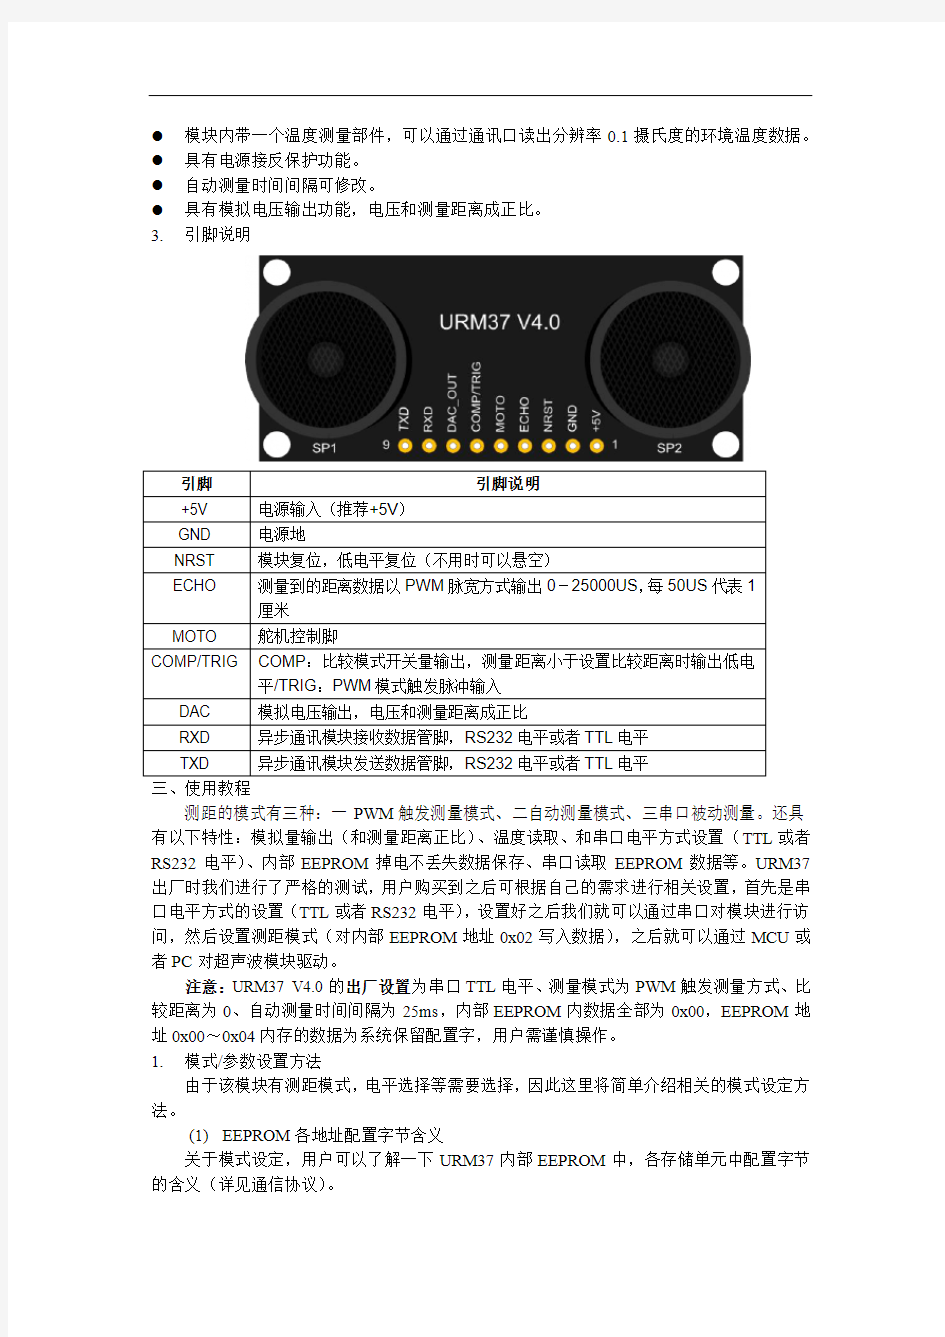 超声波传感器URM37 V4.0使用说明